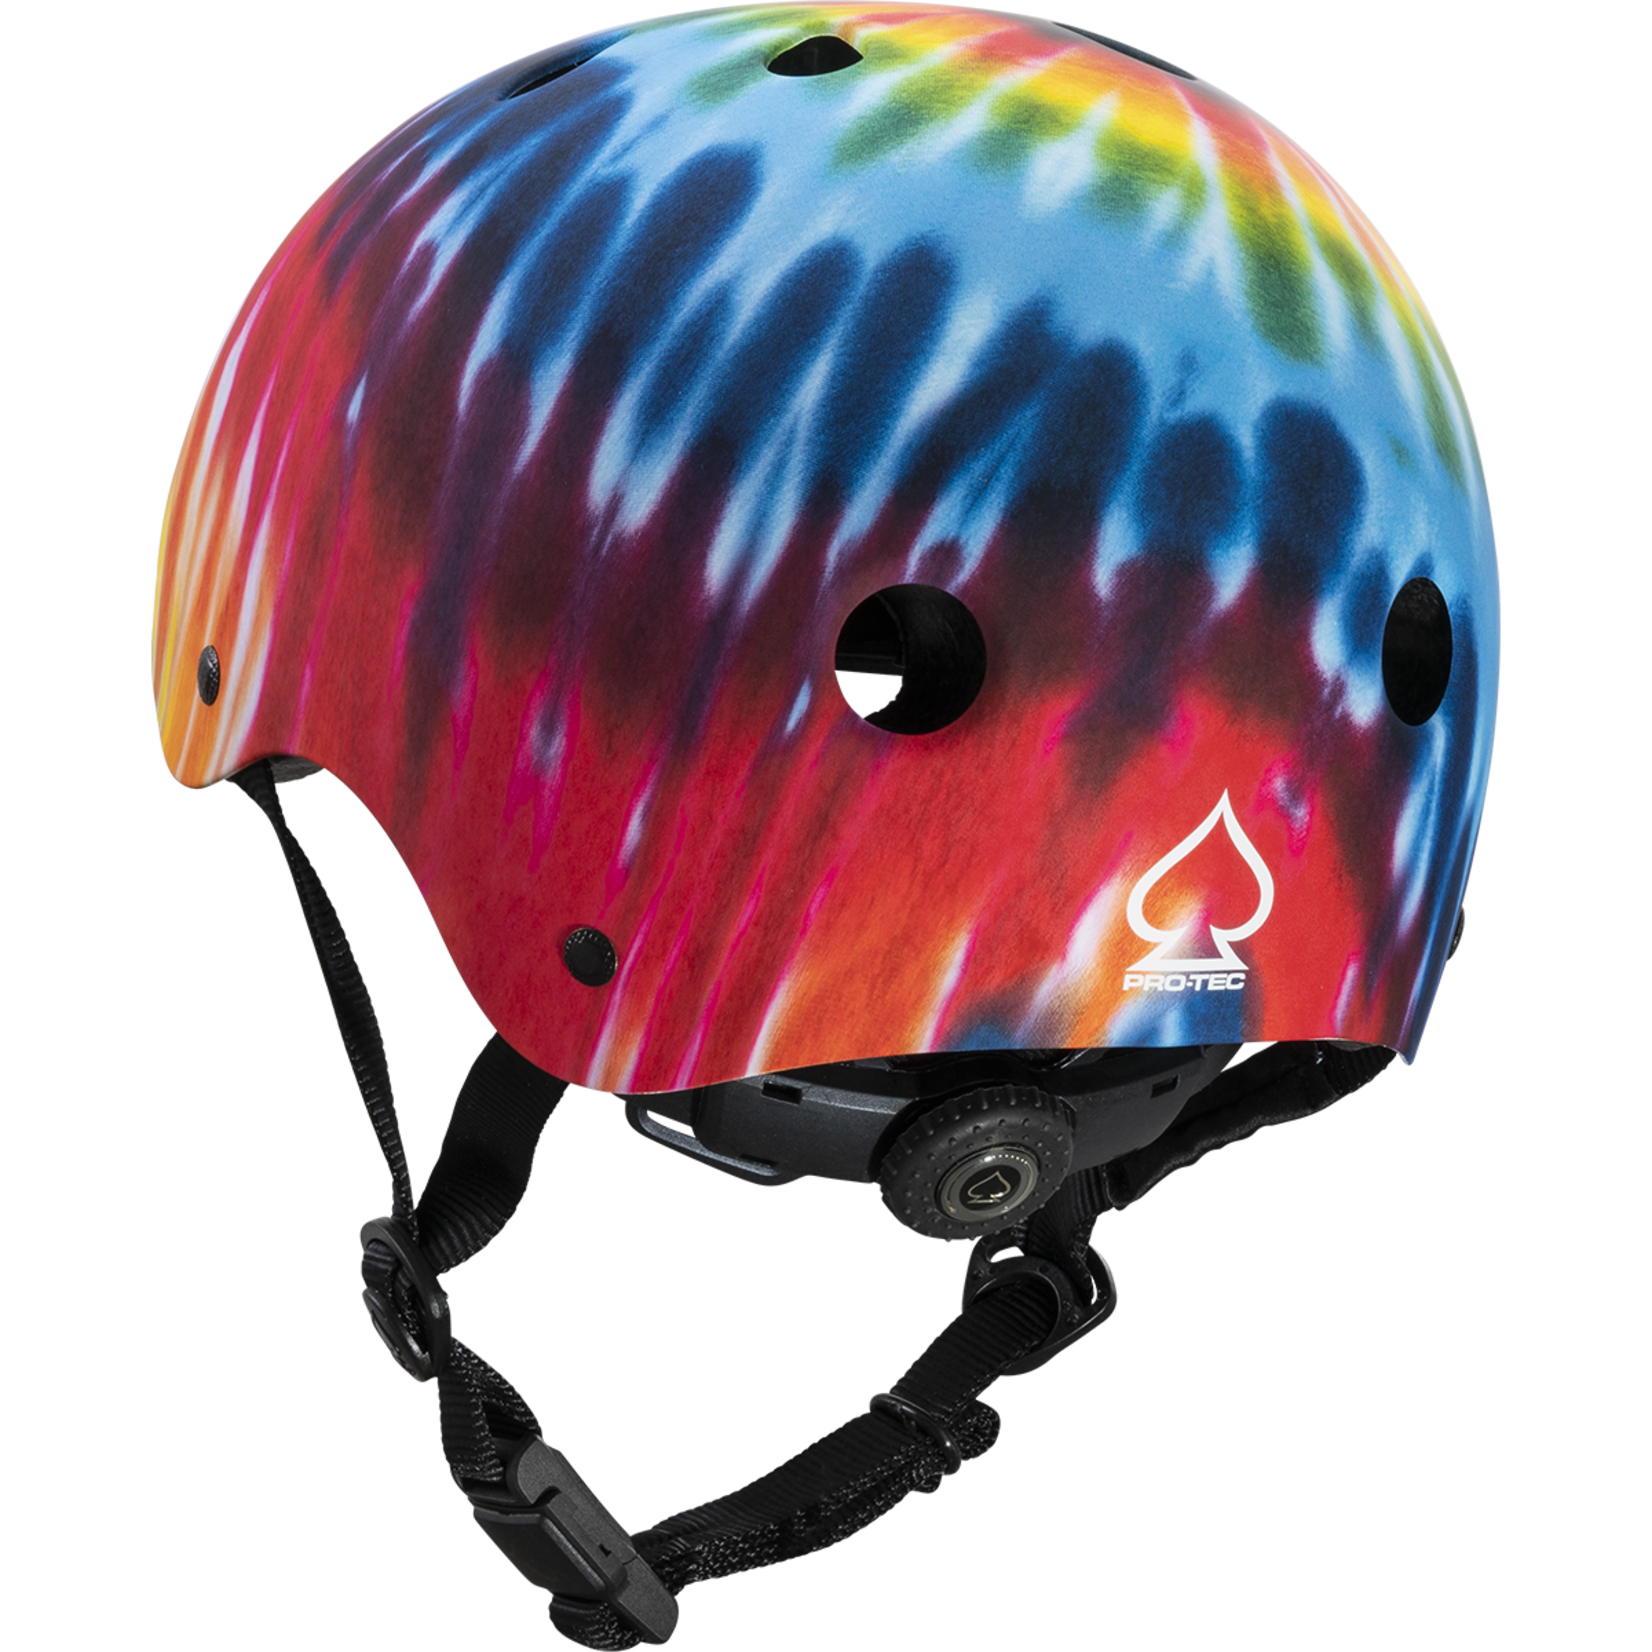 PRO-TEC Pro-Tec JR Certified Helmet - Tie Dye